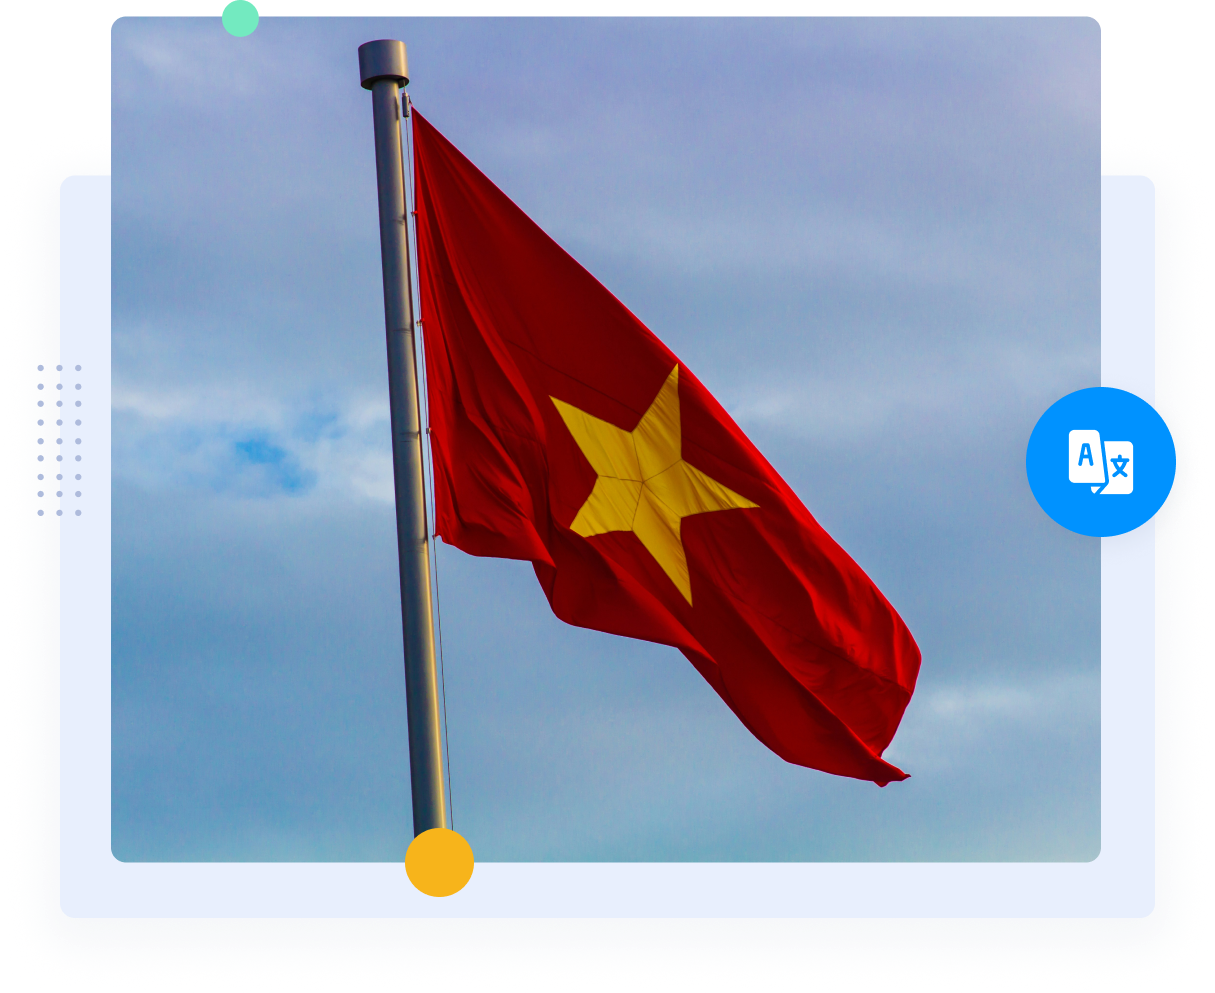 越南红旗上的黄星代表越英翻译。